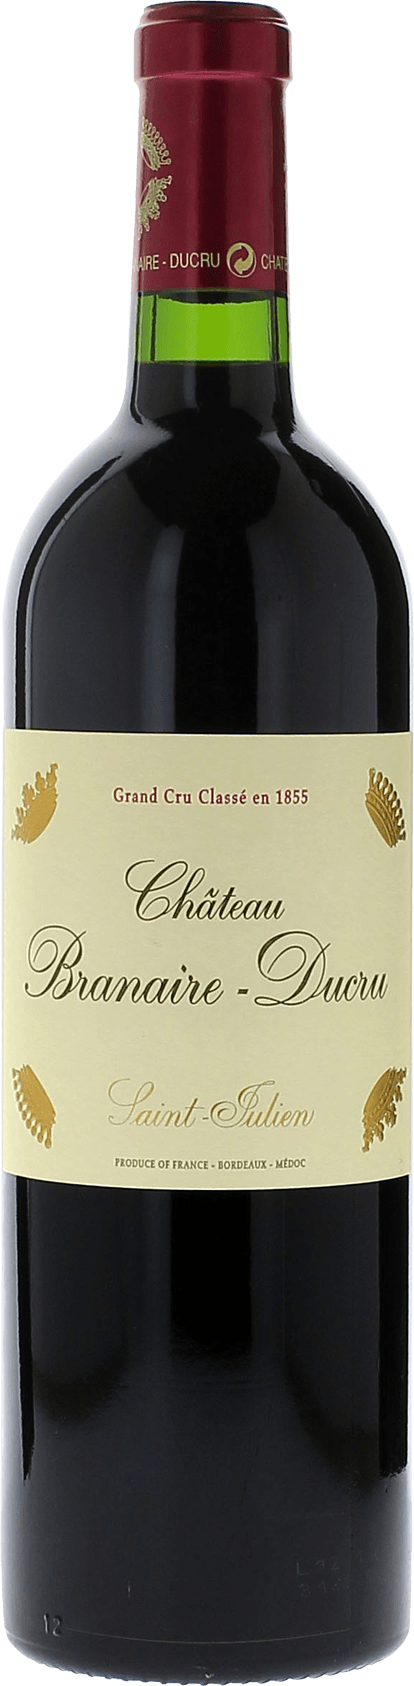 Branaire ducru 2014 4me Grand cru class Saint-Julien, Bordeaux rouge